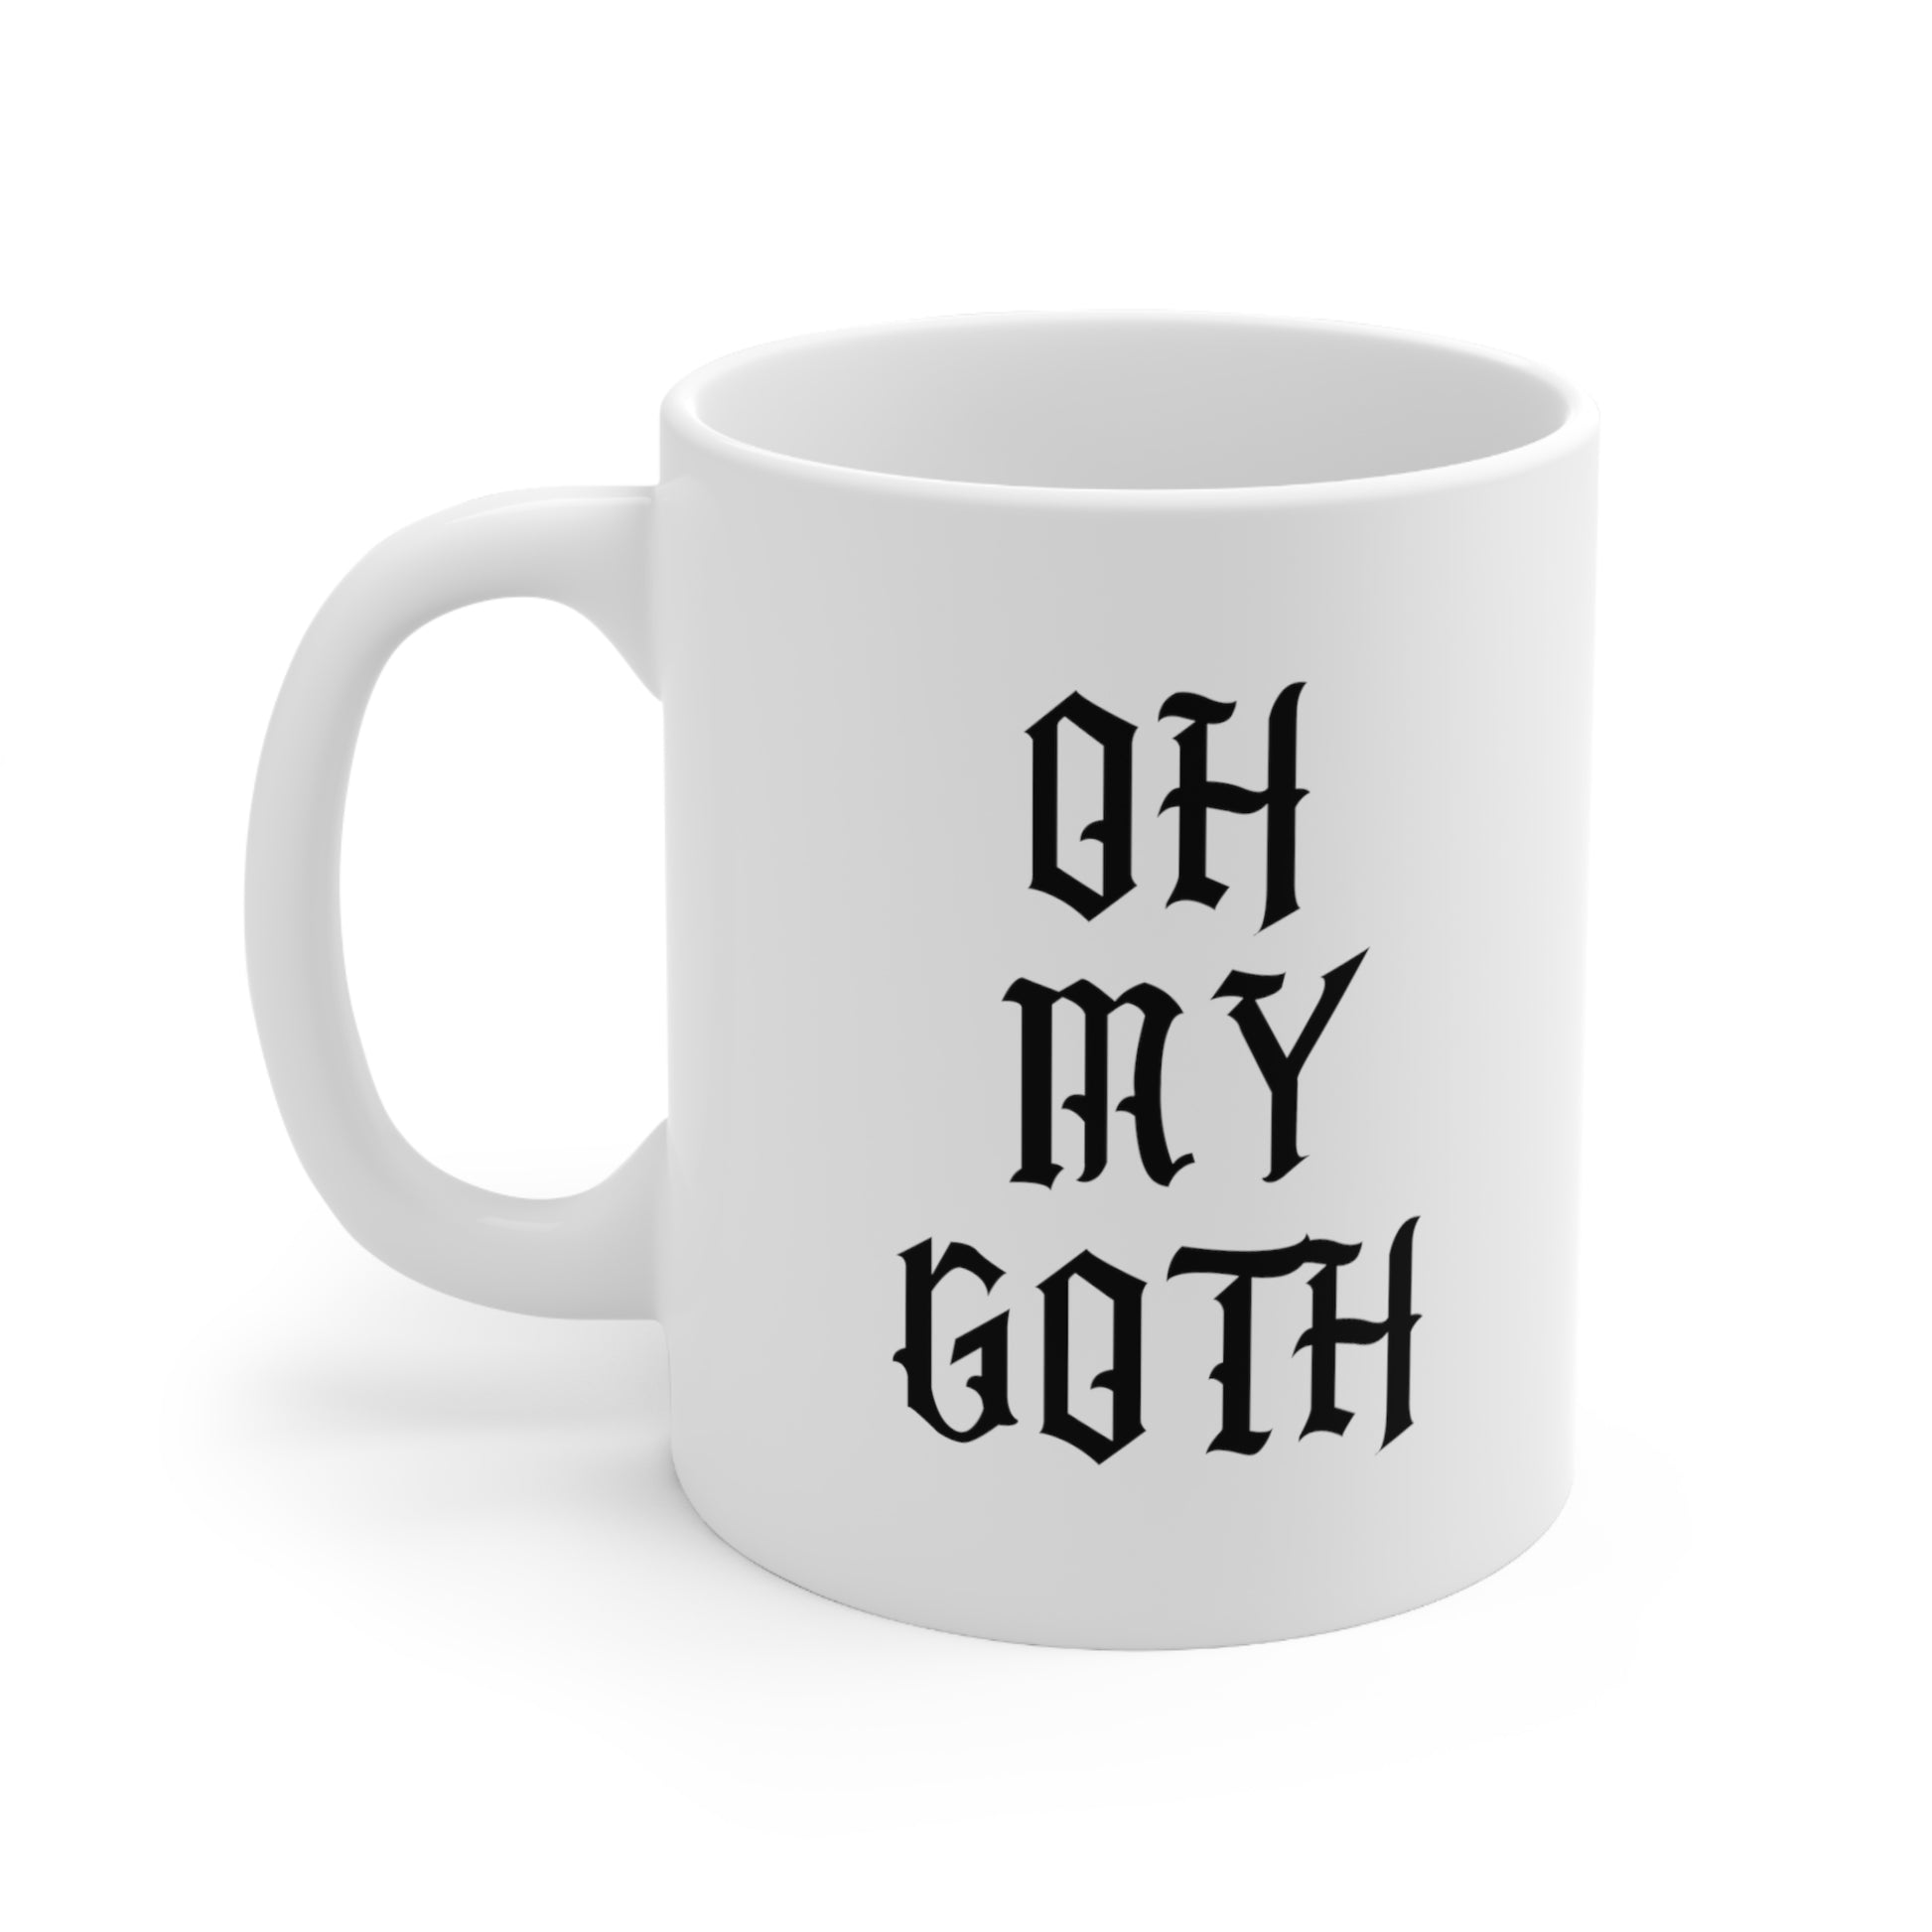 Oh My Goth Coffee Mug